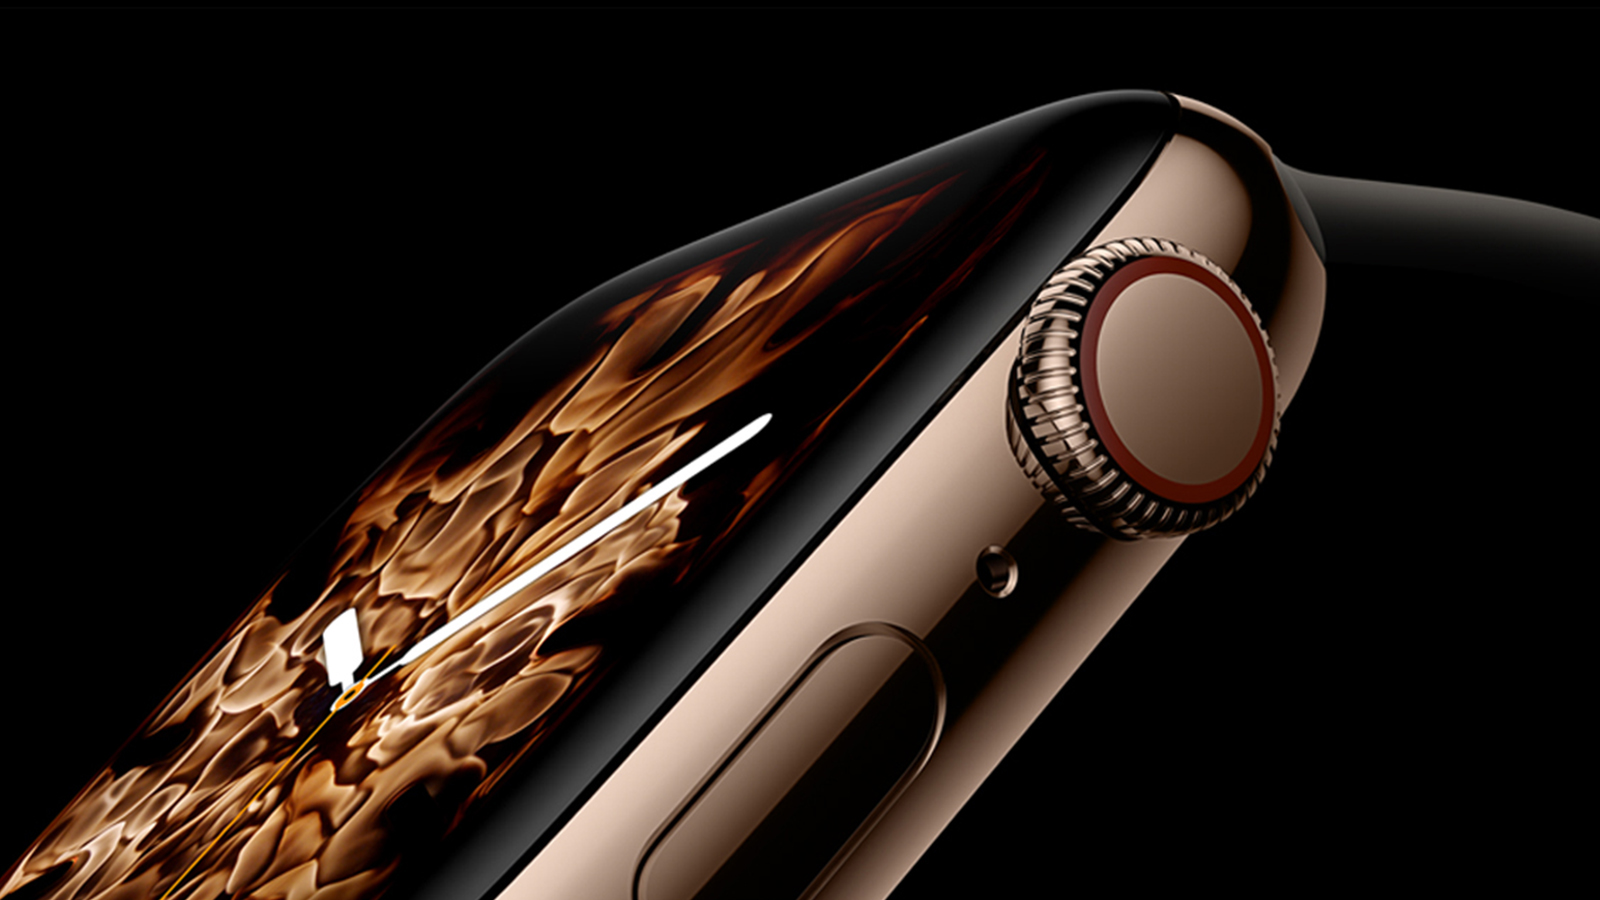 Invista na restauração completa do Apple Watch 4 com a Assistência Técnica especializada.